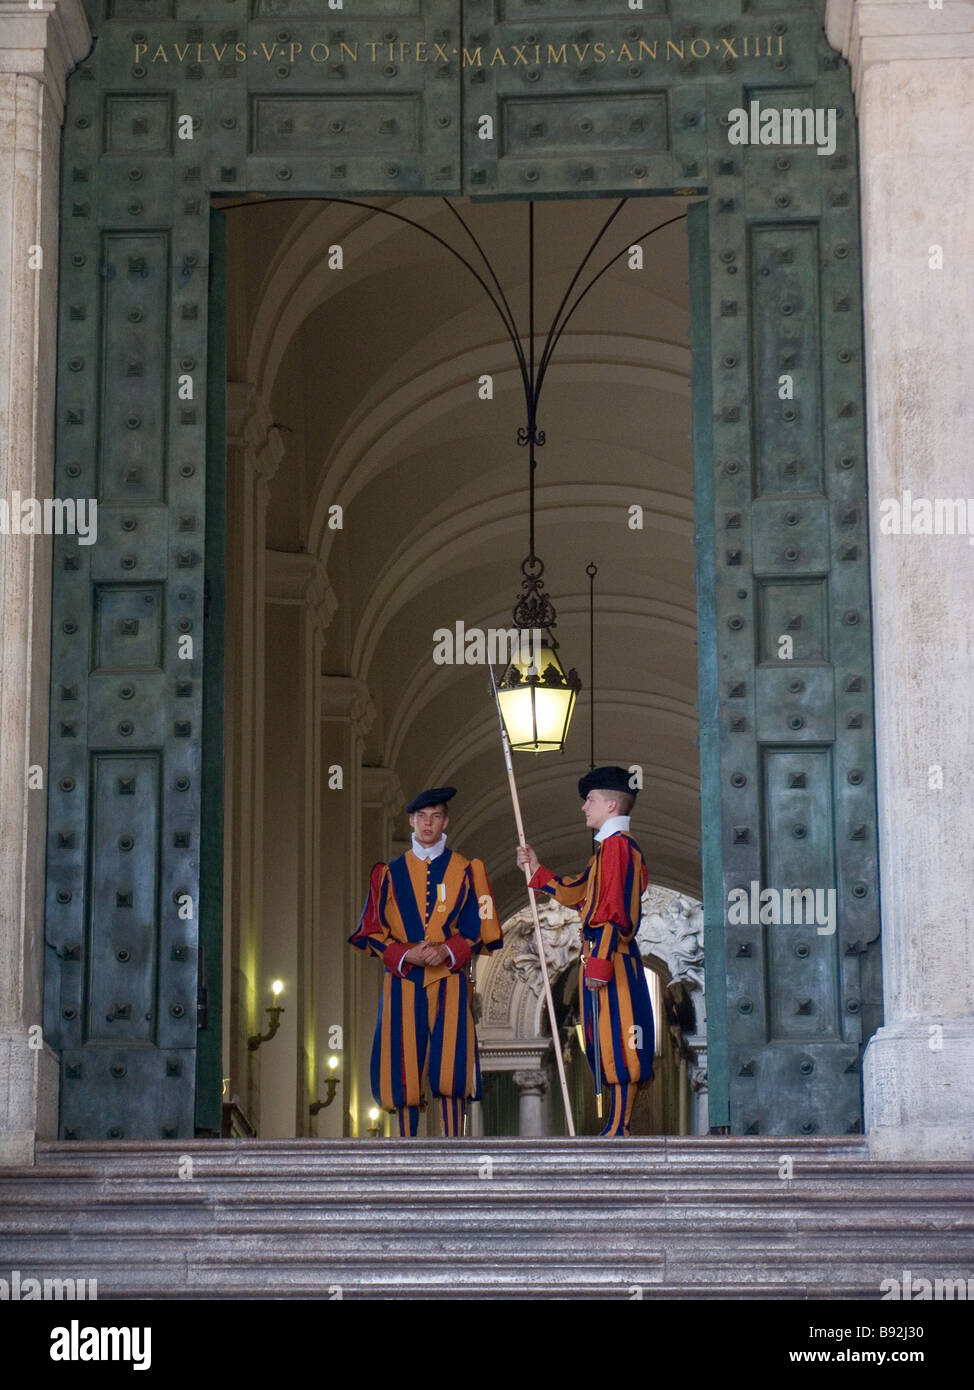 Les gardes suisses du Vatican Vatican à Rome Italie Etat de la Cité du Vatican Site du patrimoine mondial Banque D'Images